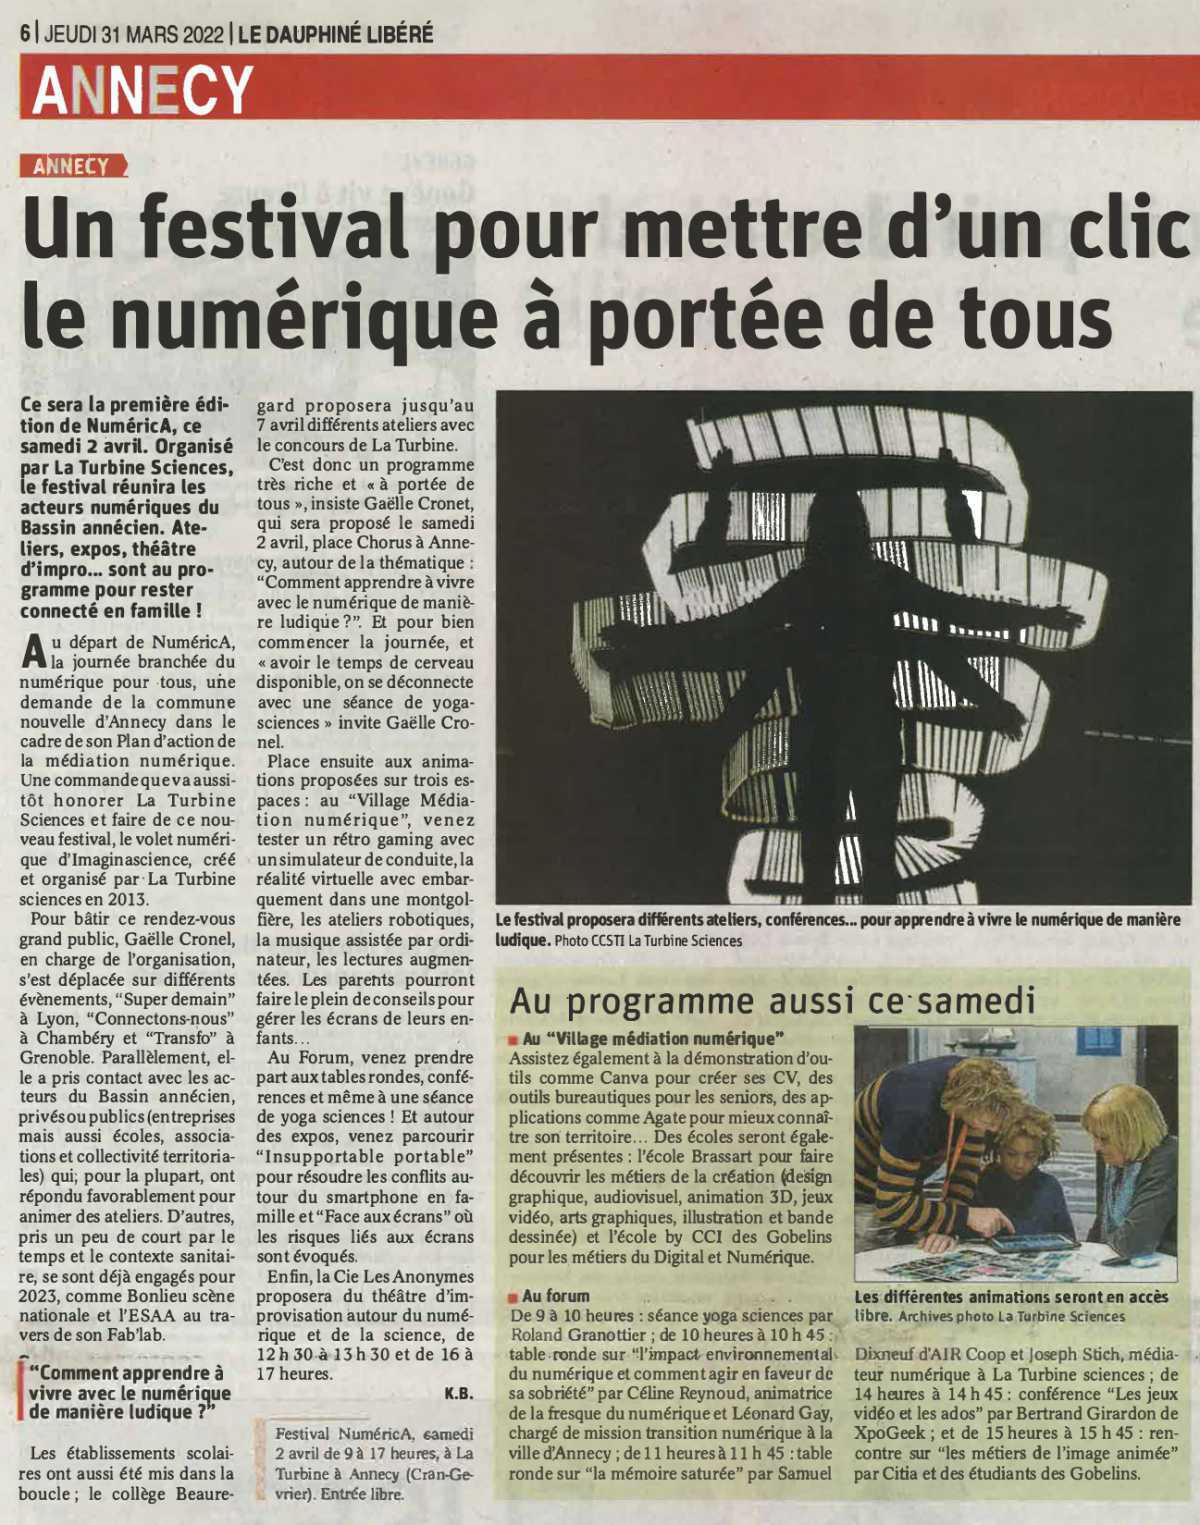 Le Dauphiné Libéré - Un festival pour mettre d'un clic le numérique à portée de tous